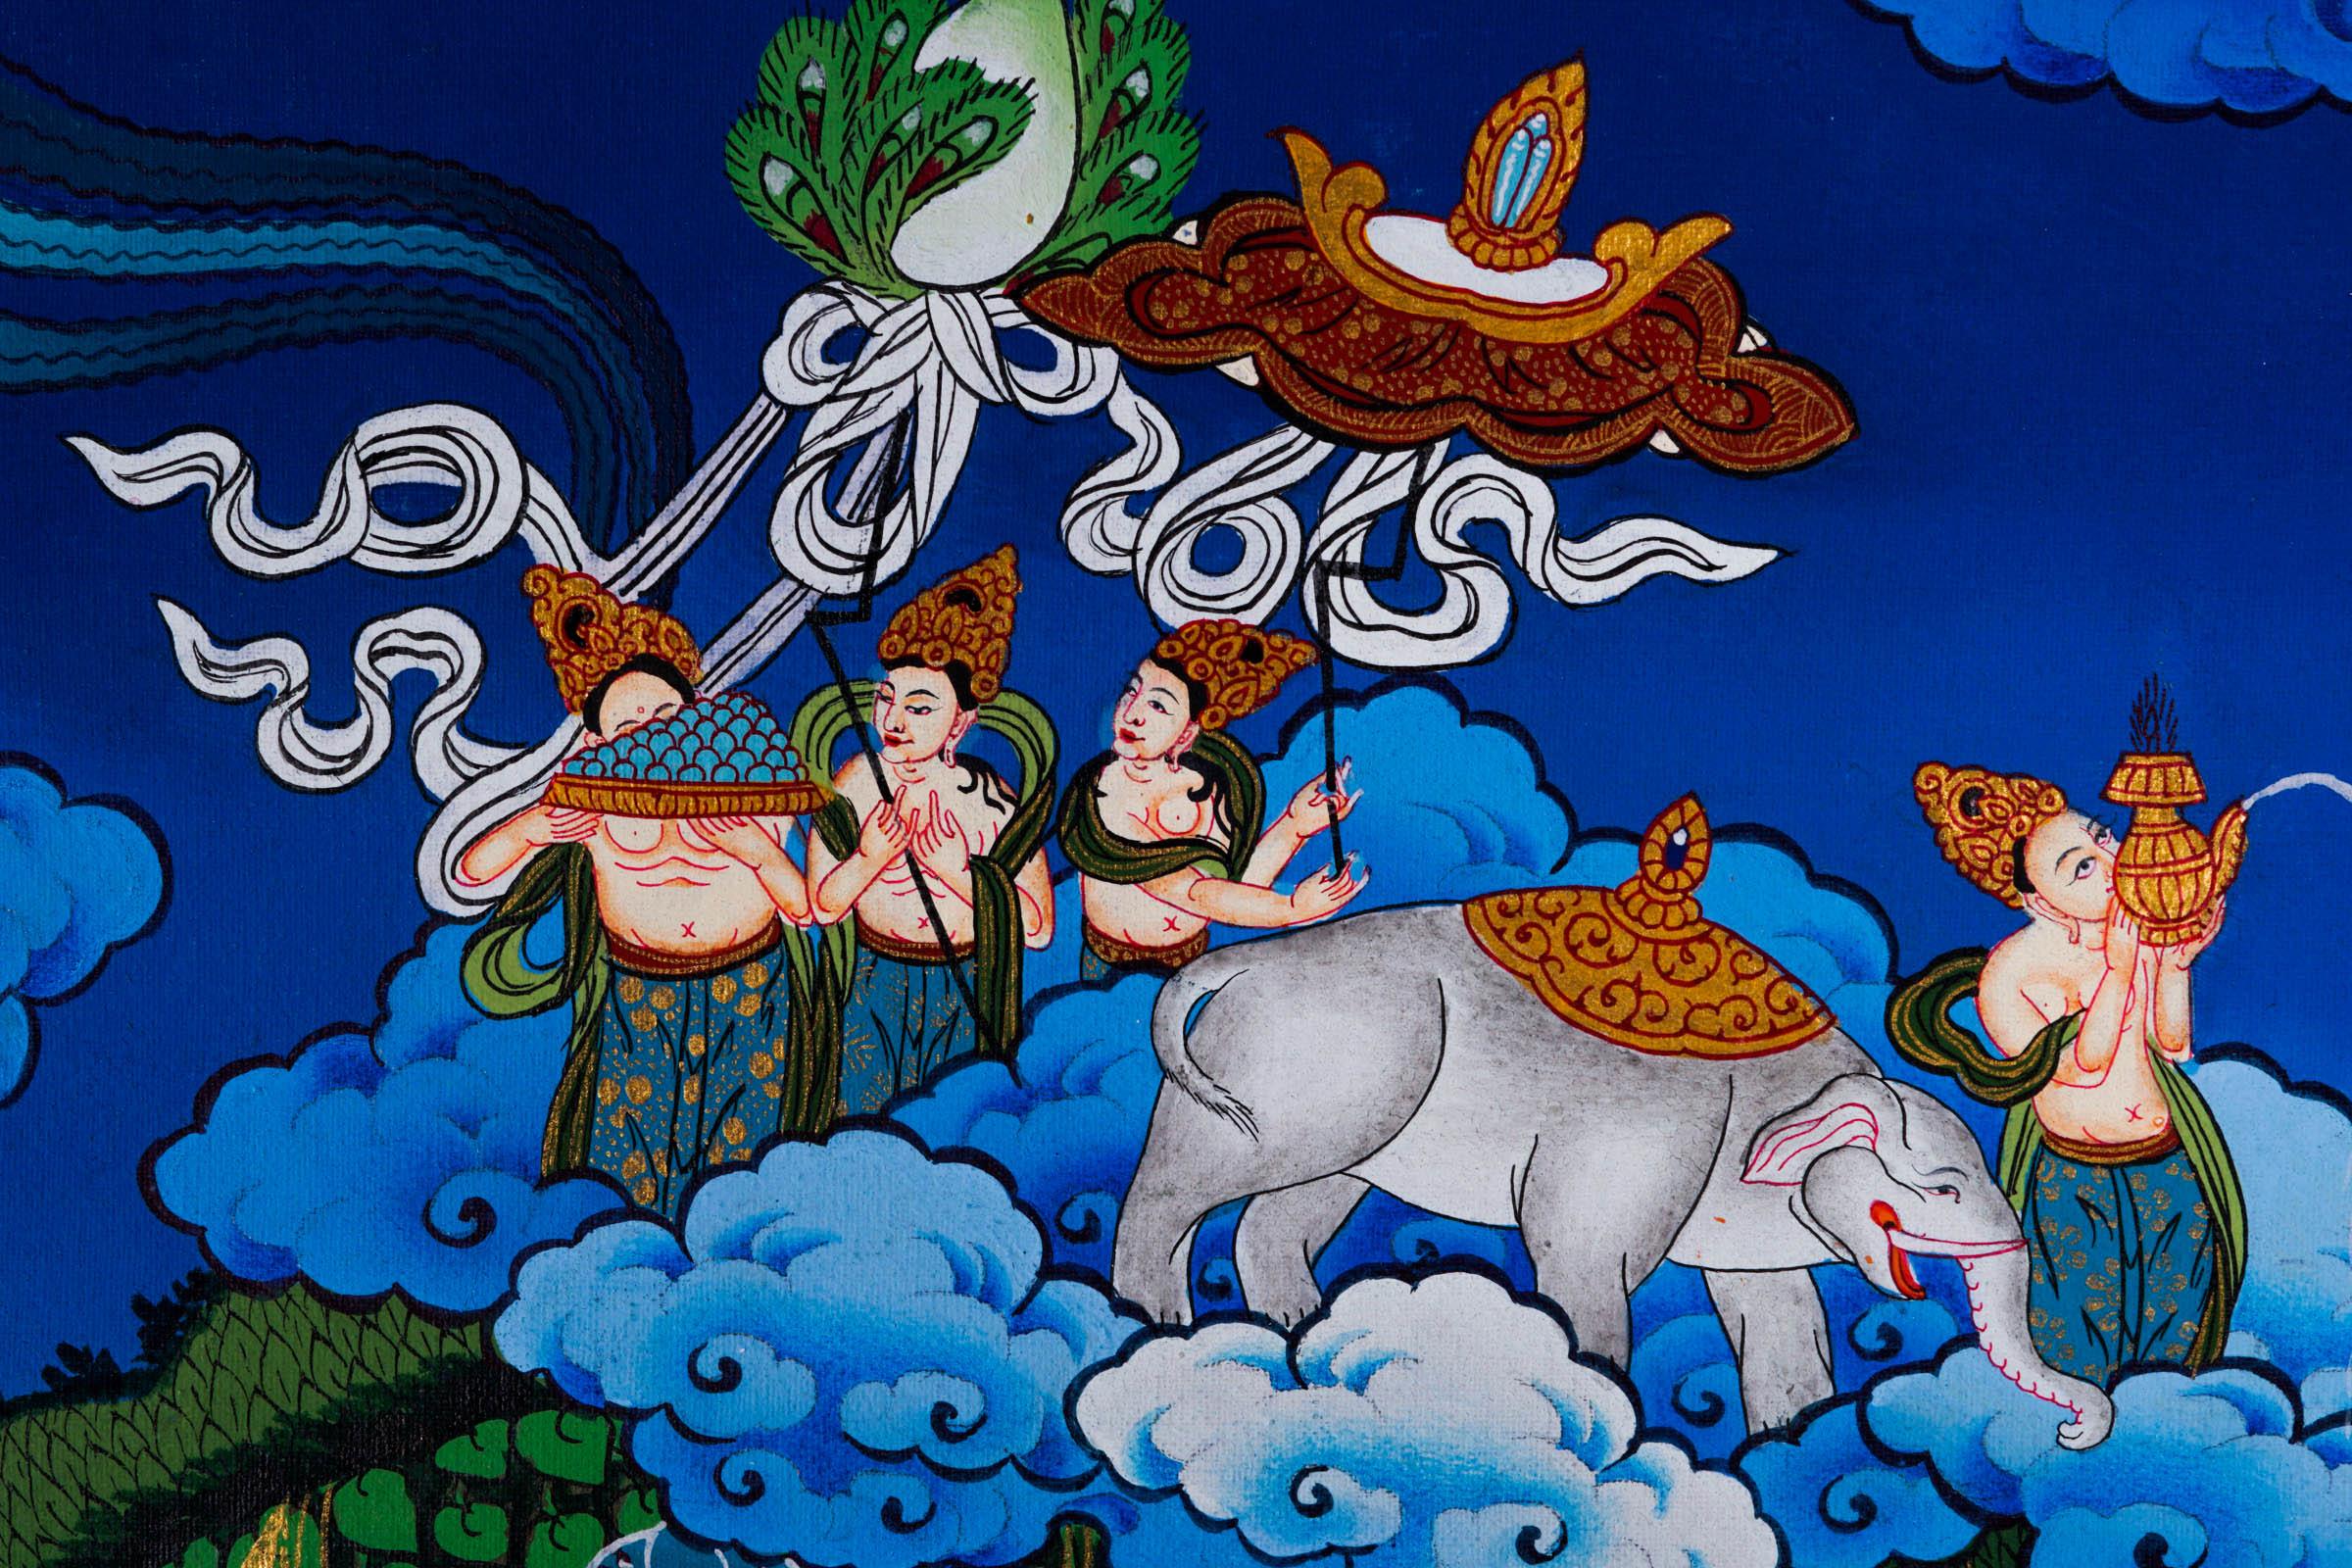 Mayadevi Thangka Painting - Himalayas Shop